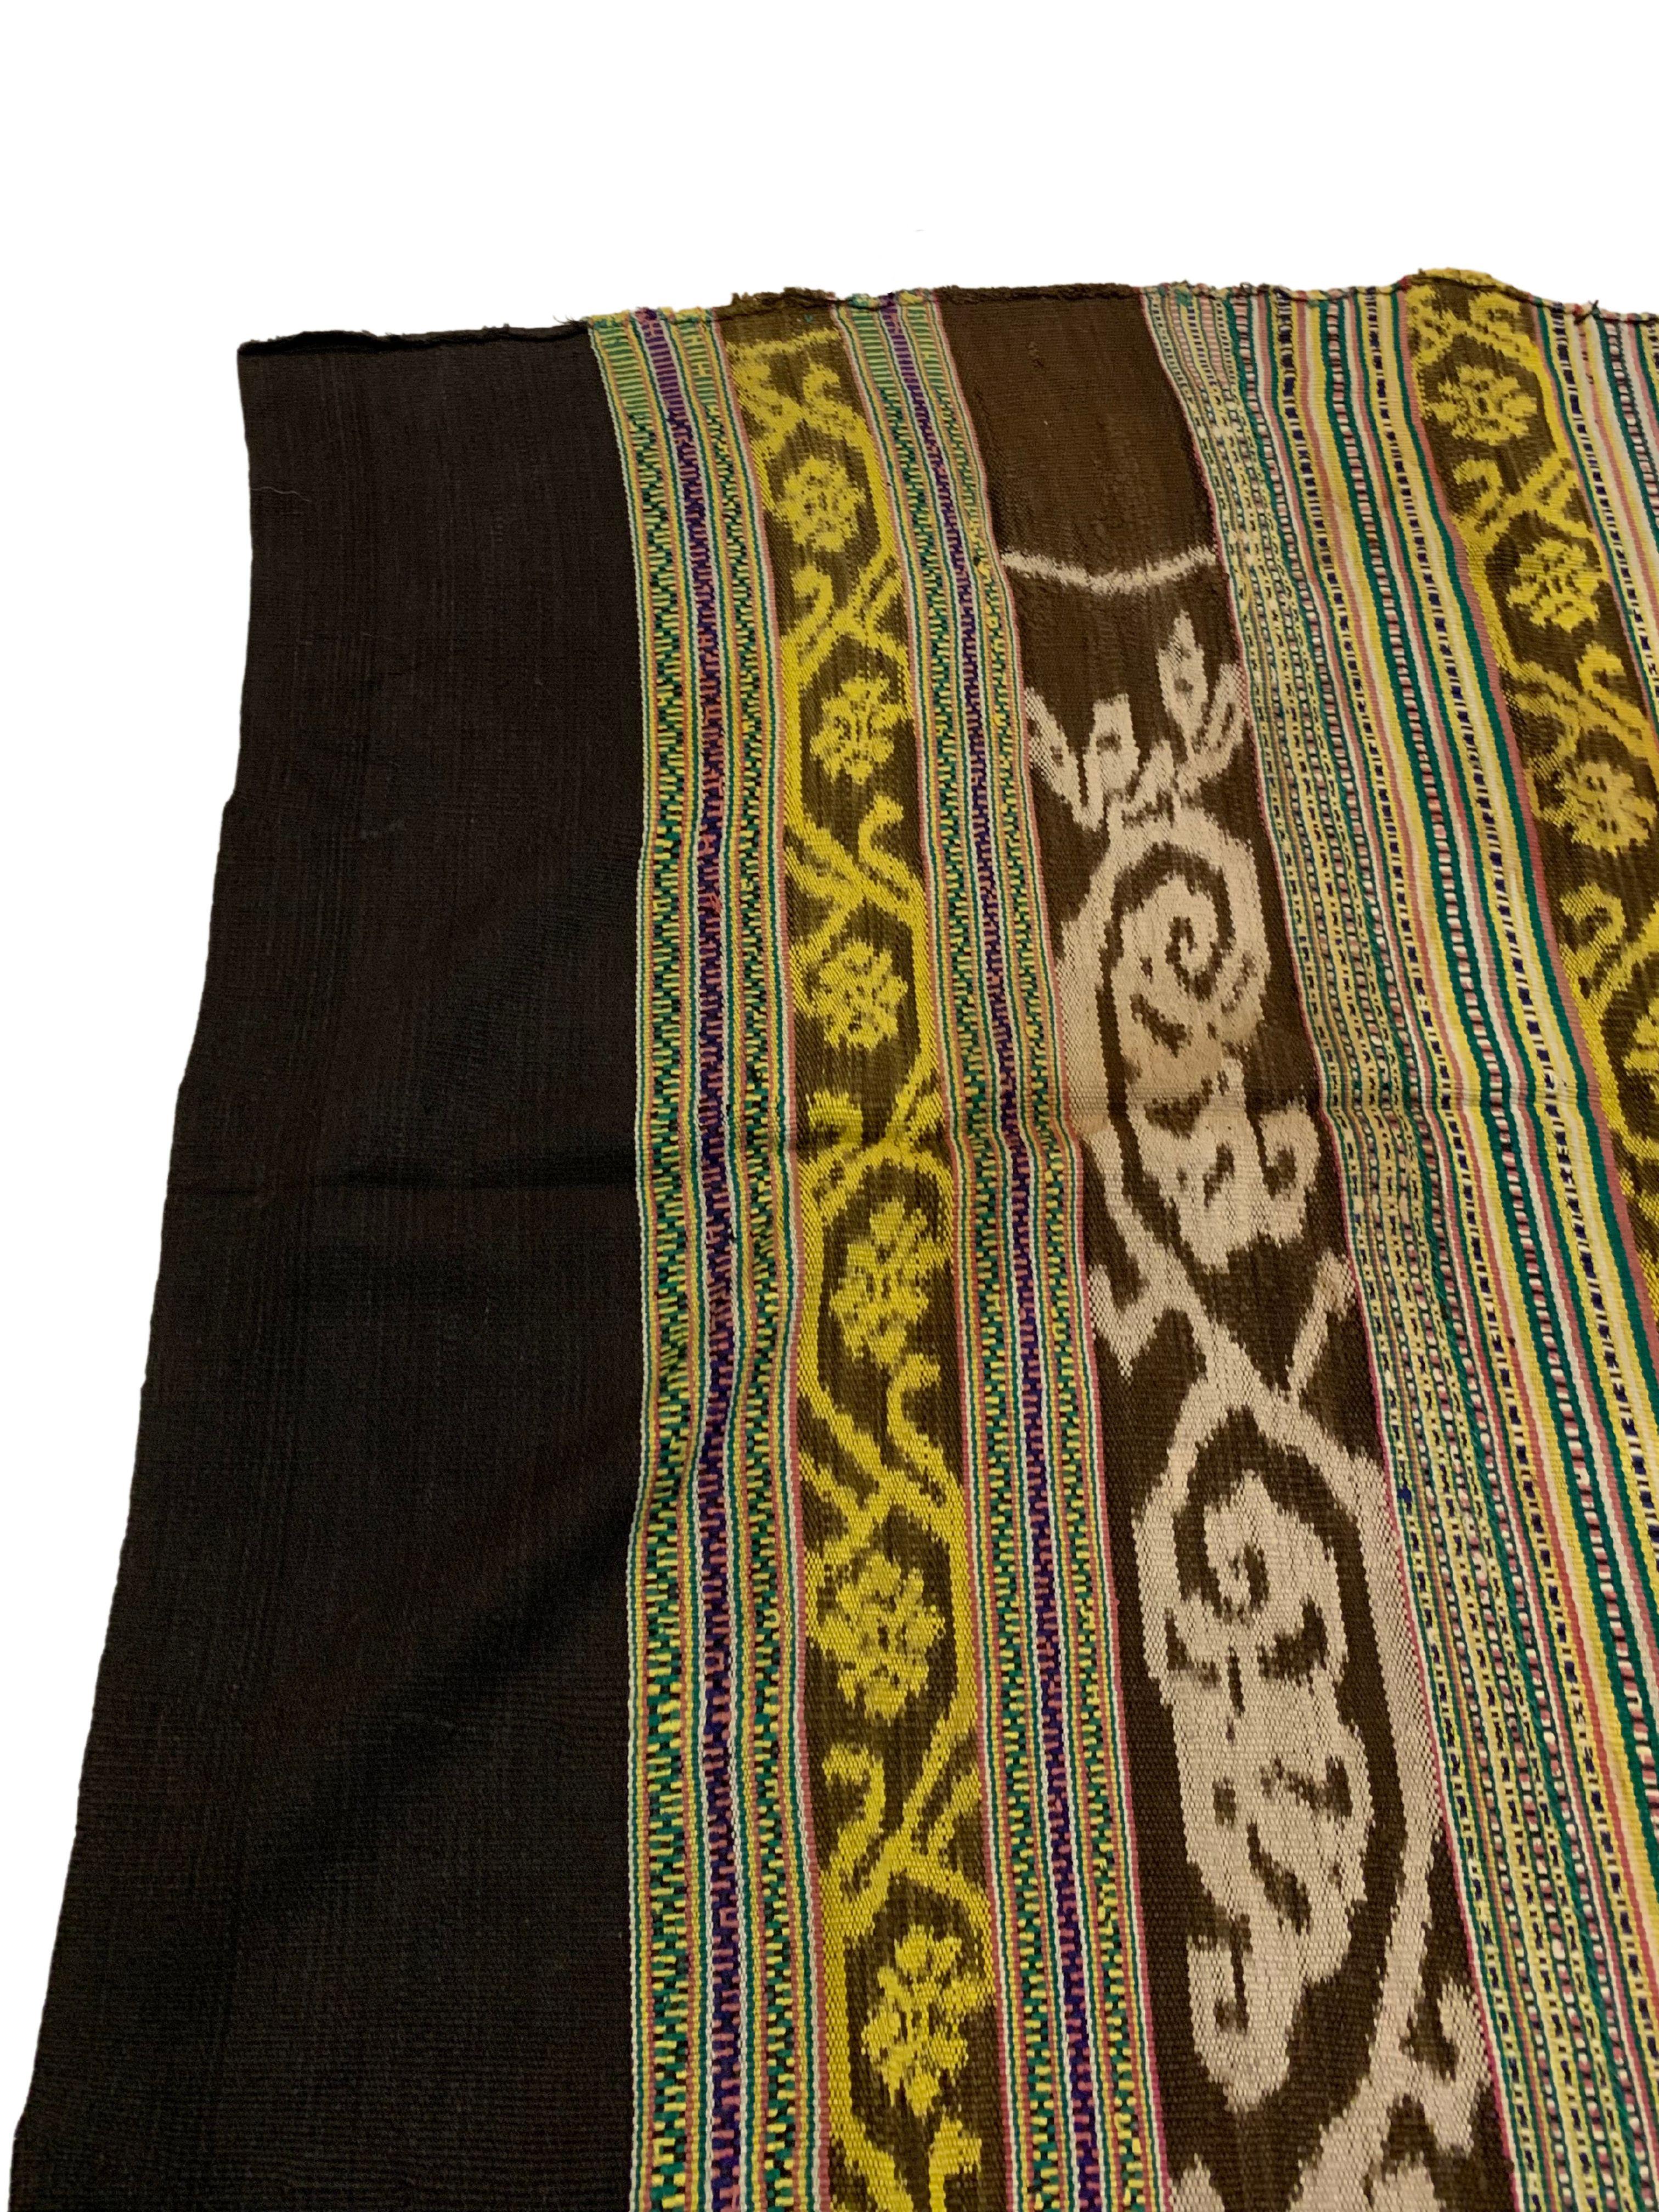 Dieses Ikat-Textil stammt von der Insel Timor in Indonesien. Es wird mit natürlich gefärbten Garnen nach einer seit Generationen überlieferten Methode handgewebt. Ein wunderschönes Textil mit ausgeprägten Stammesmotiven. Ein wunderbarer Gegenstand,